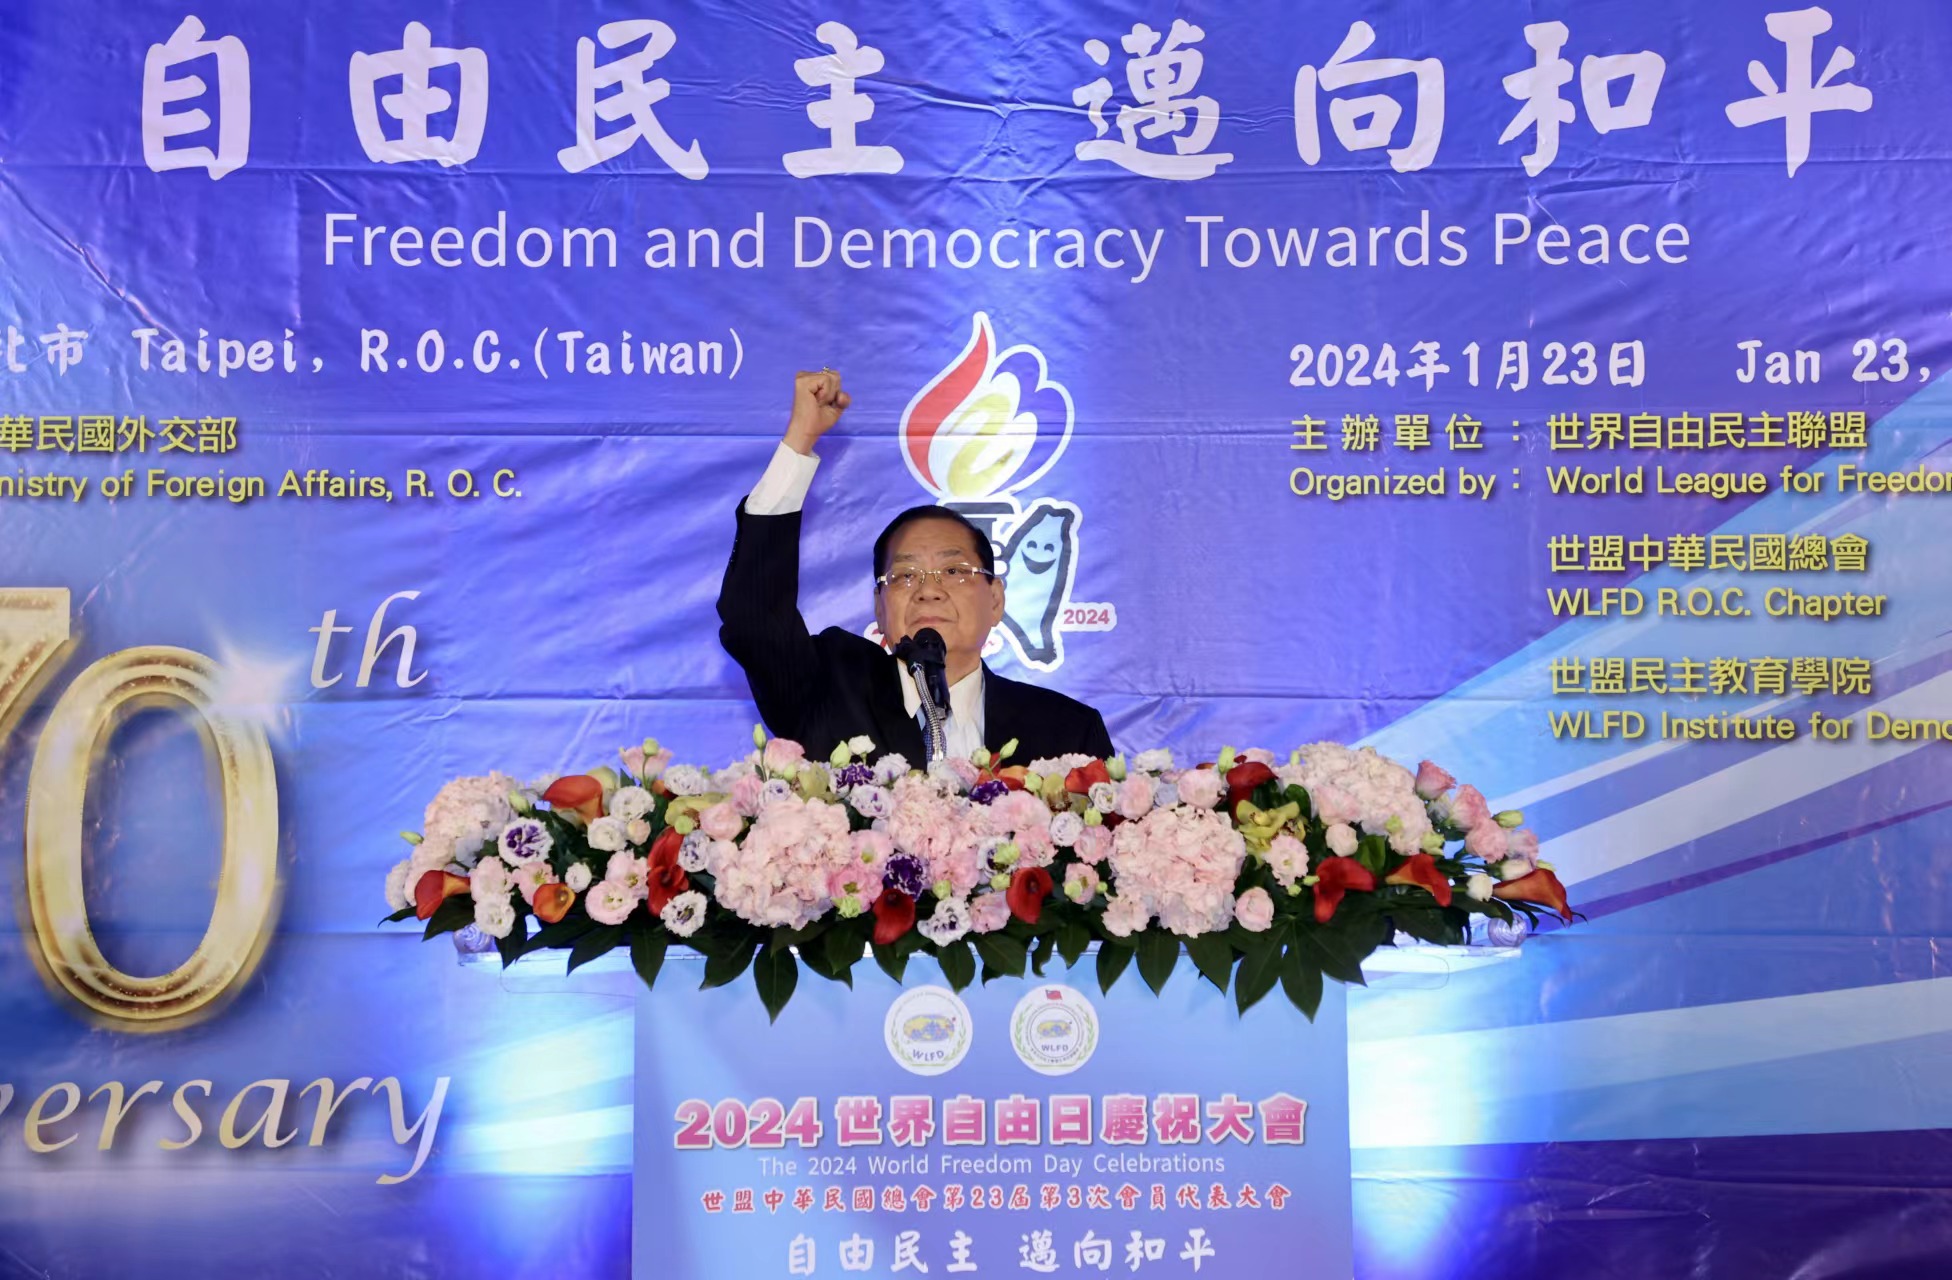 世亞盟中華民國總會舉辦2024世界自由日慶祝大會